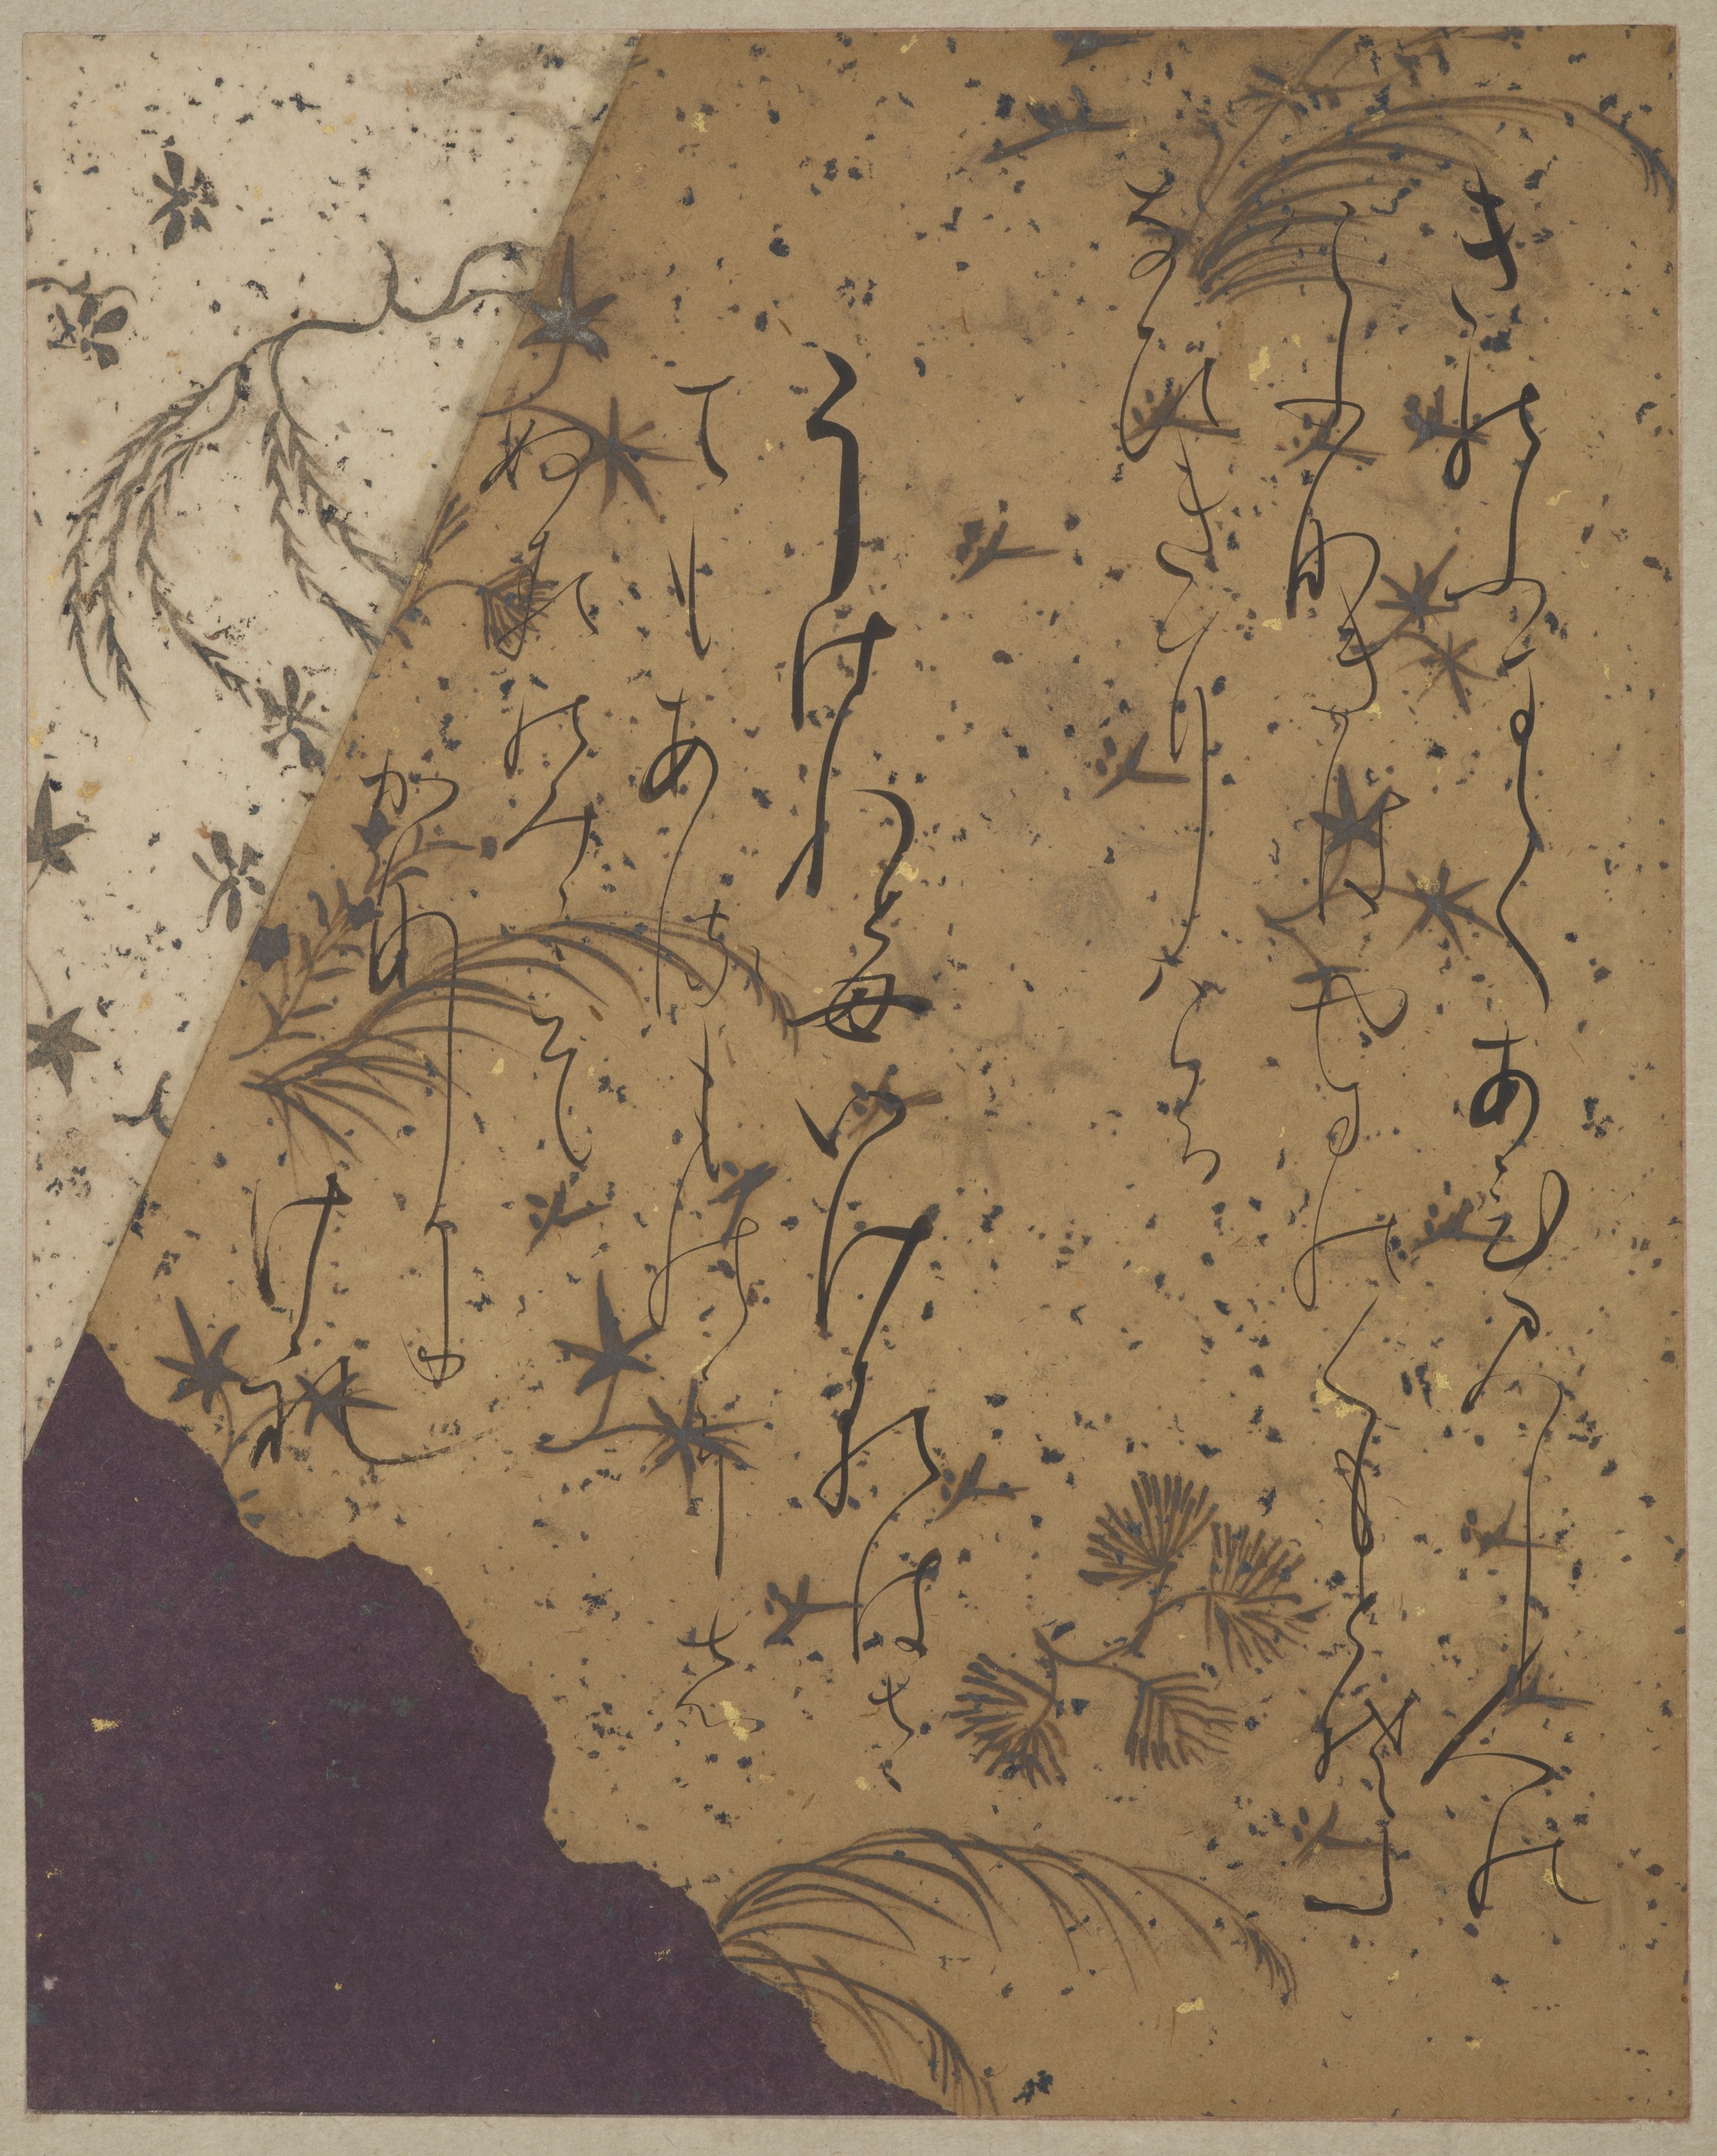 Σελίδα από το Ishiyama-gire by Fujiwara no Sadanobu (attrib.) - Περίοδος Χεϊάν, πρώιμος 12ος αιώνας - 131.8 x 44 cm 